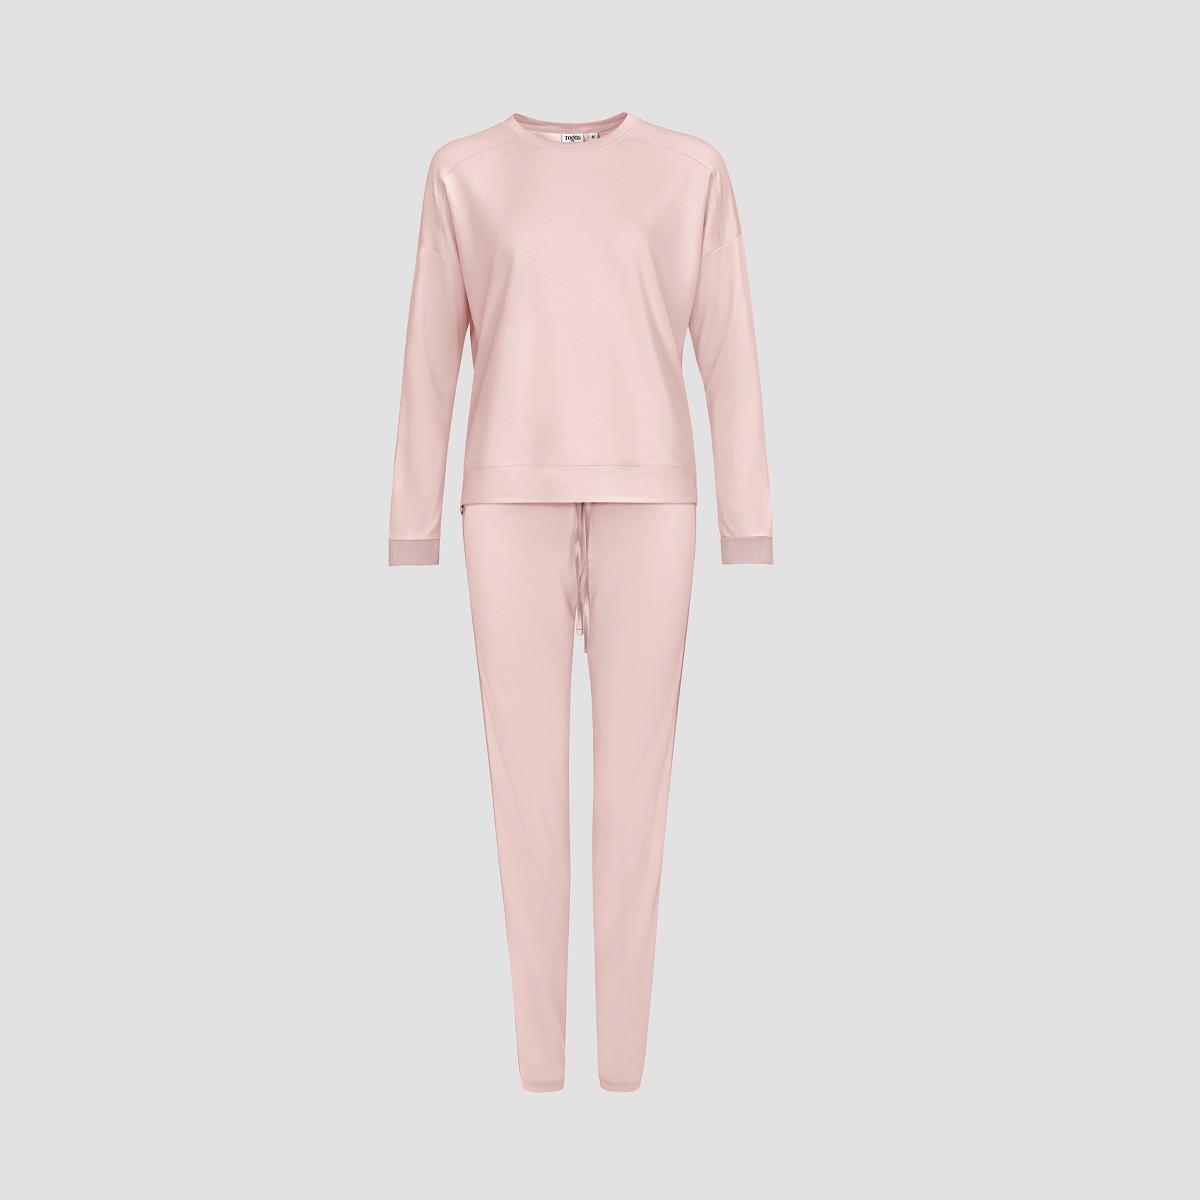 Пижама Togas Рене розовая женская пижама для девочек kids by togas стробби бело розовый 104 110 см